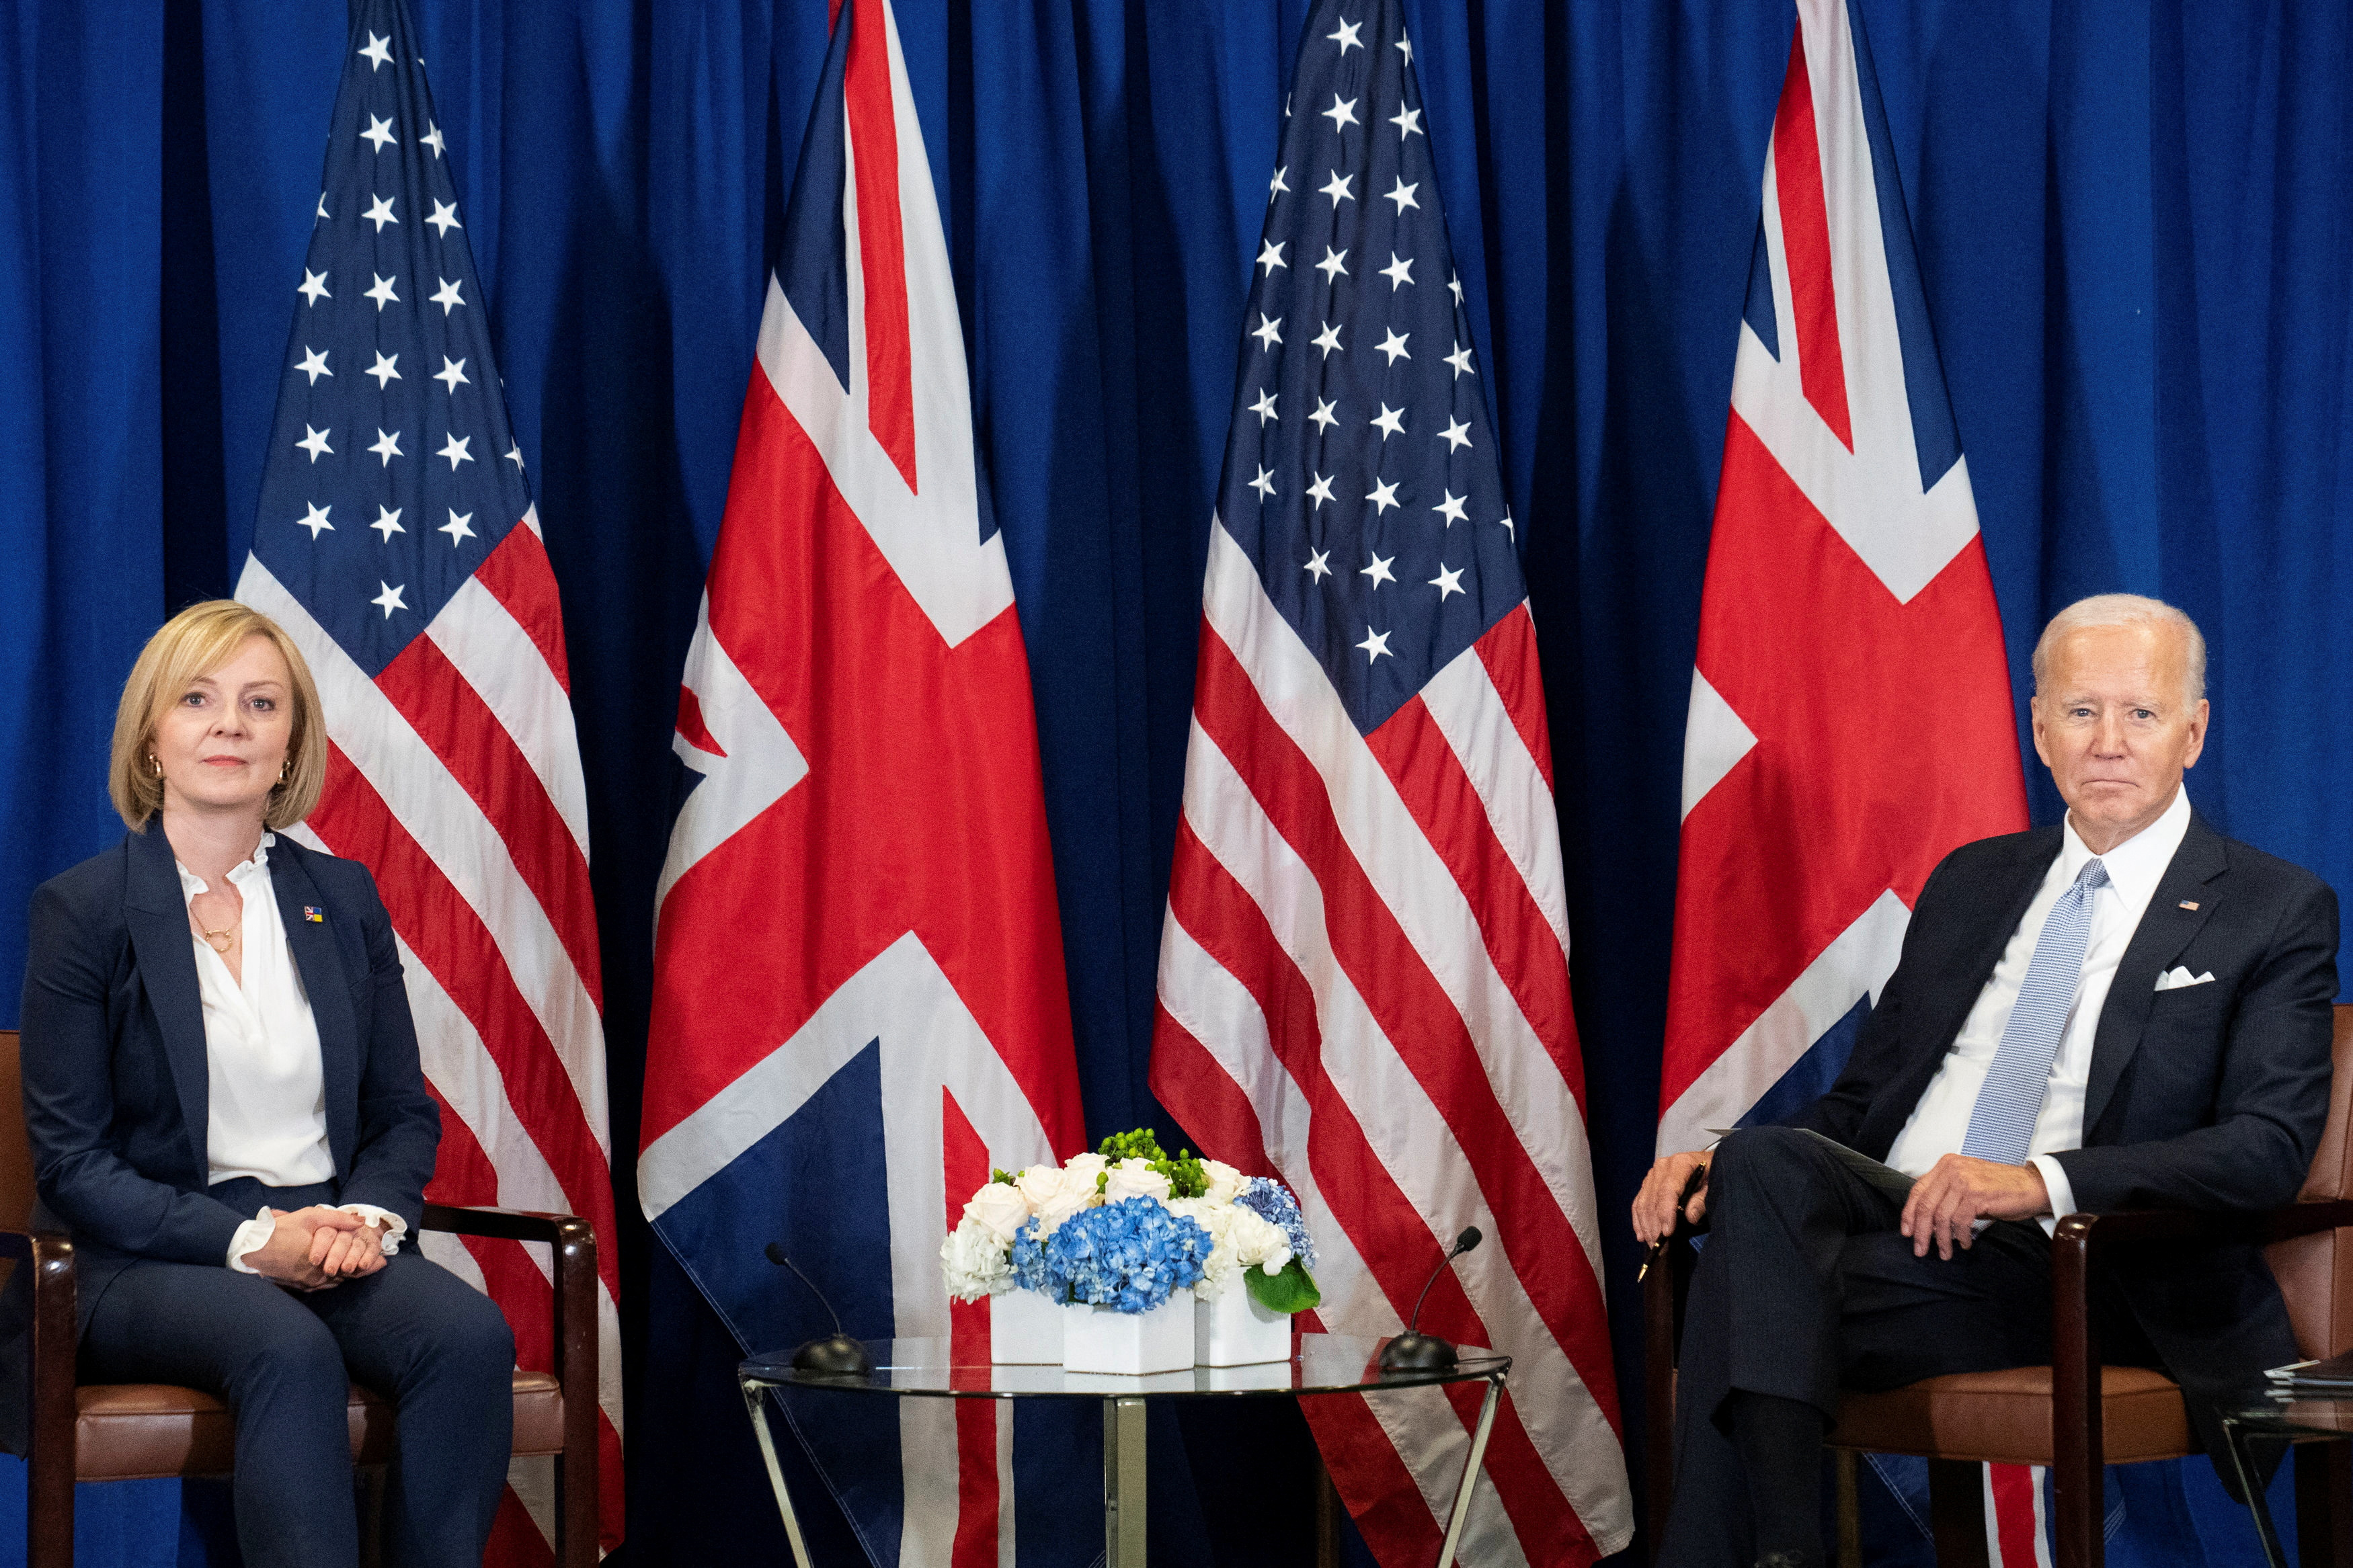 La primera ministra británica, Liz Truss, mantiene una reunión bilateral con el presidente estadounidense, Joe Biden, durante su visita a Estados Unidos para asistir a la 77ª Asamblea General de la ONU en Nueva York, Estados Unidos, el 21 de septiembre de 2022. Stefan Rousseau/Pool vía REUTERS